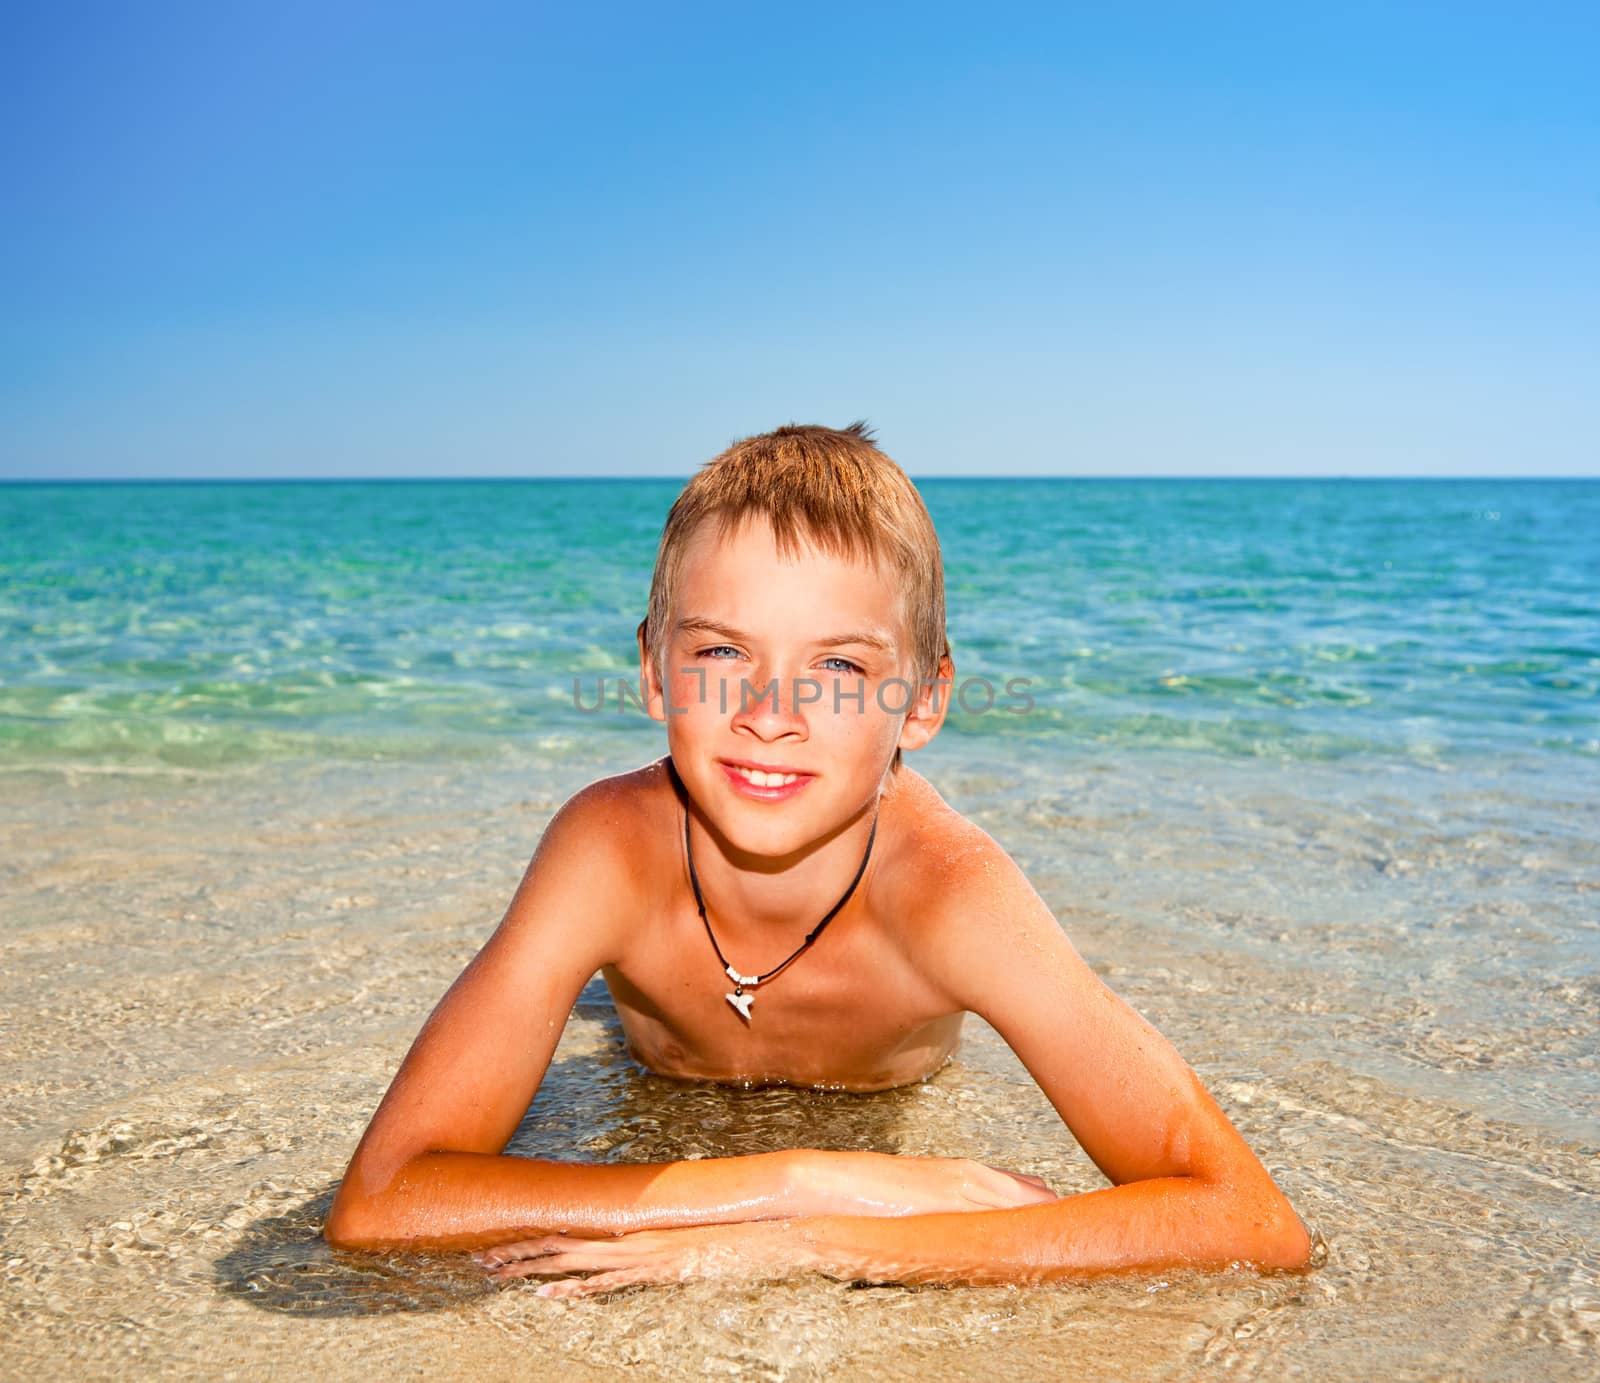 Boy on a beach by naumoid